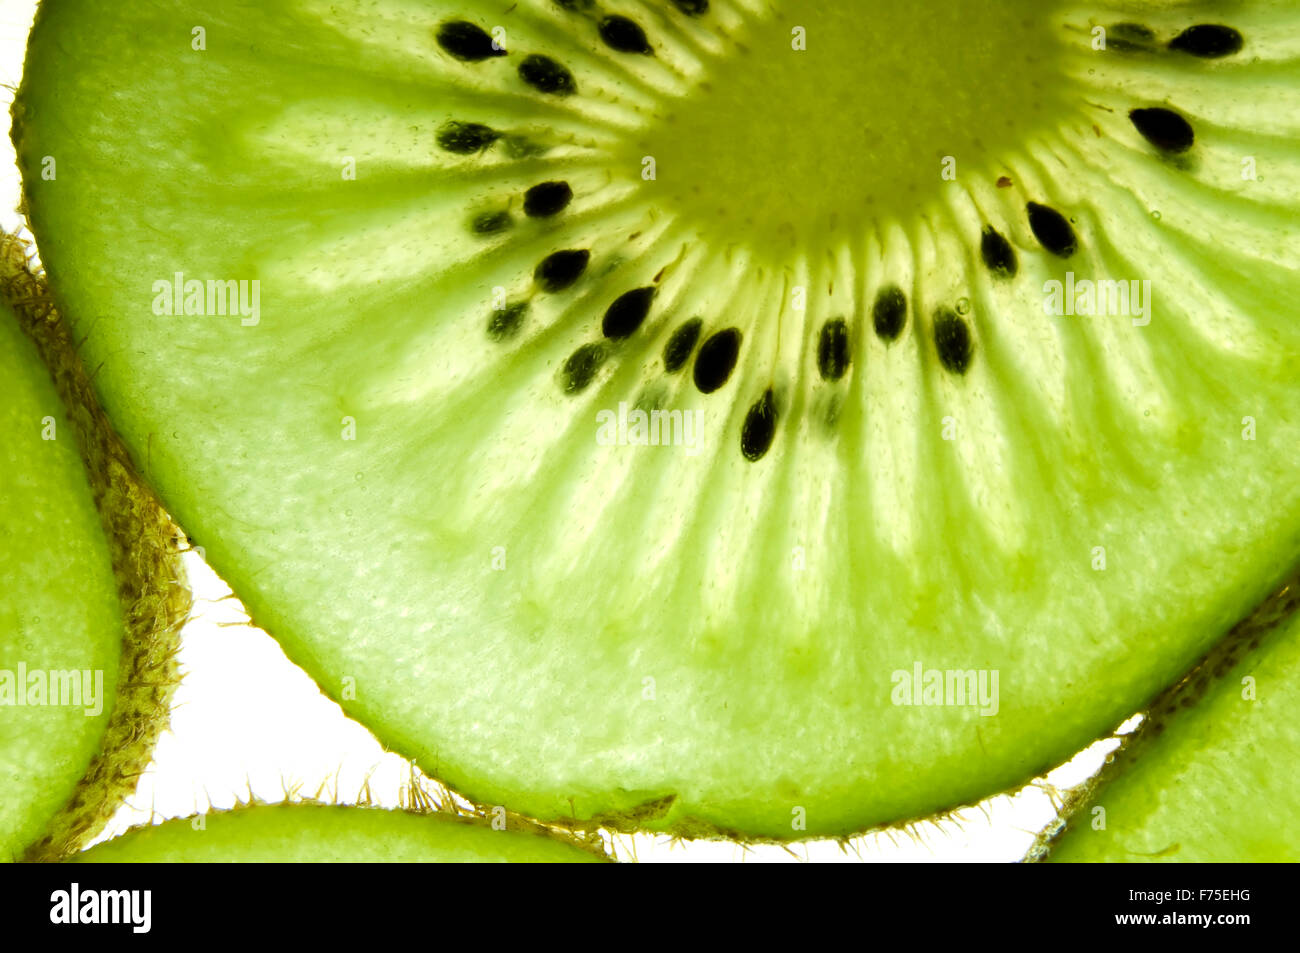 Kiwi background Stock Photo